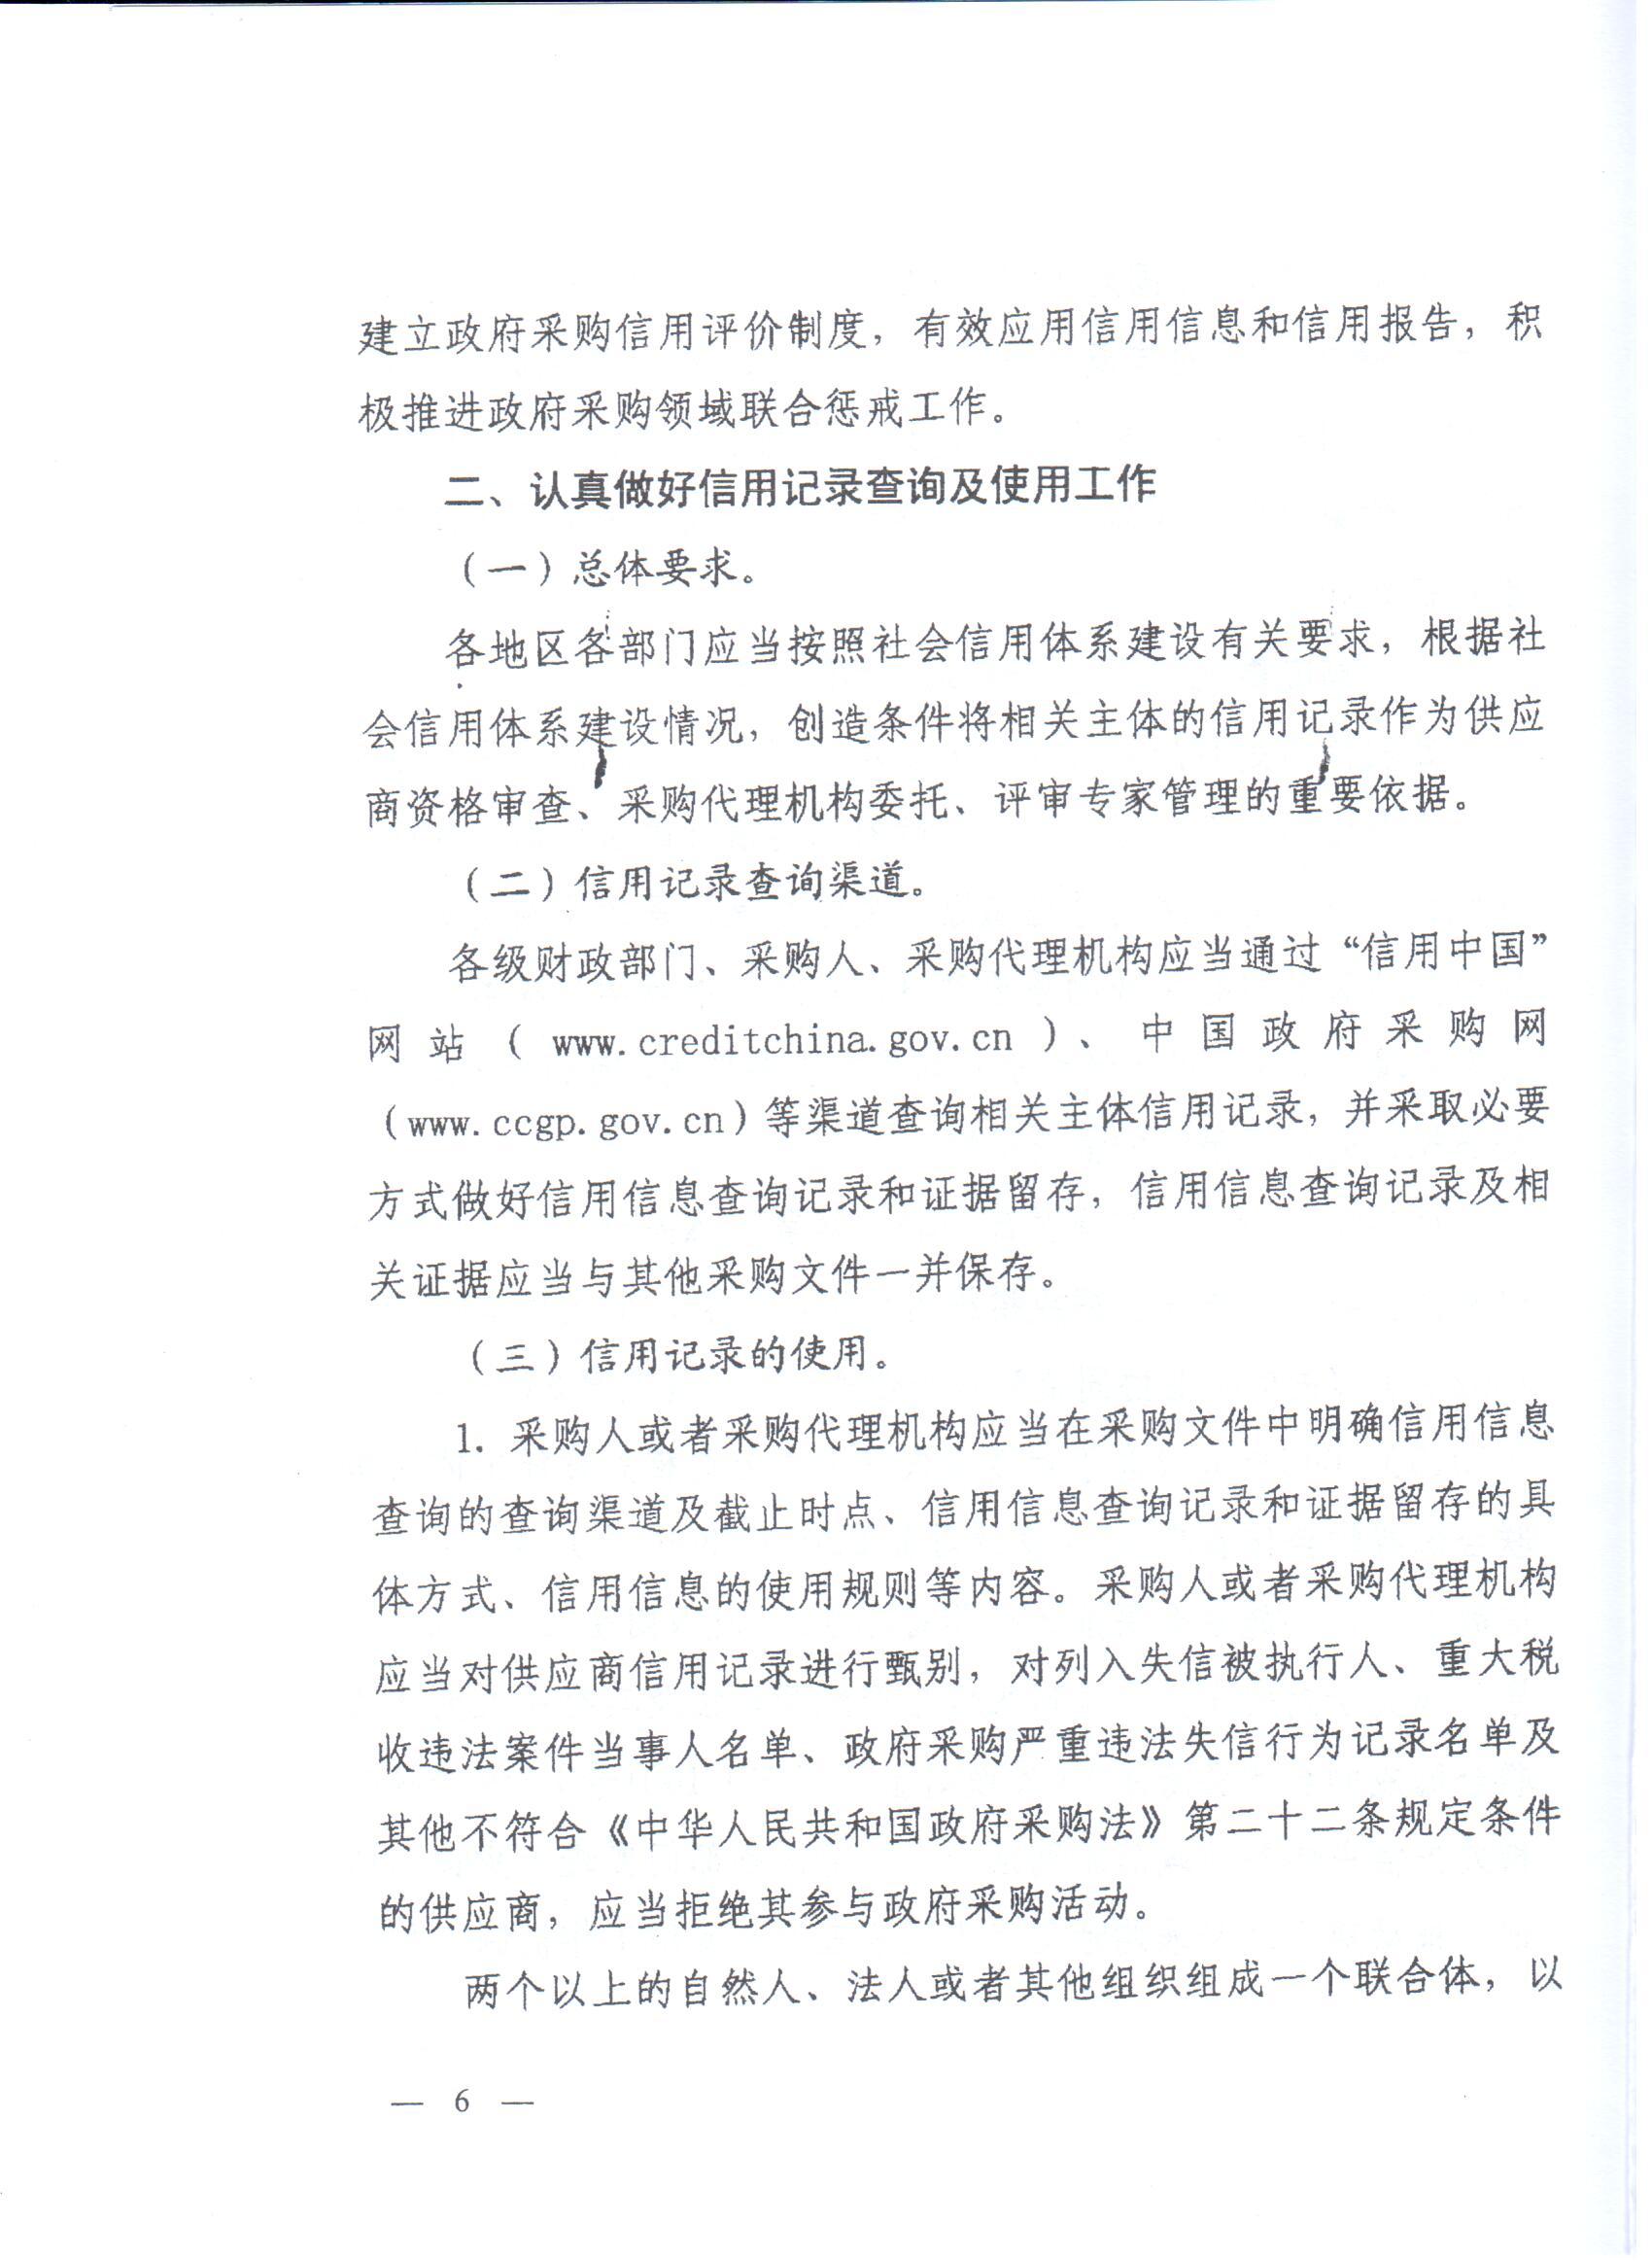 河南省财政厅转发财政部关于在政府采购活动中查询及使用信用记录有关问题的通知的通知(图6)